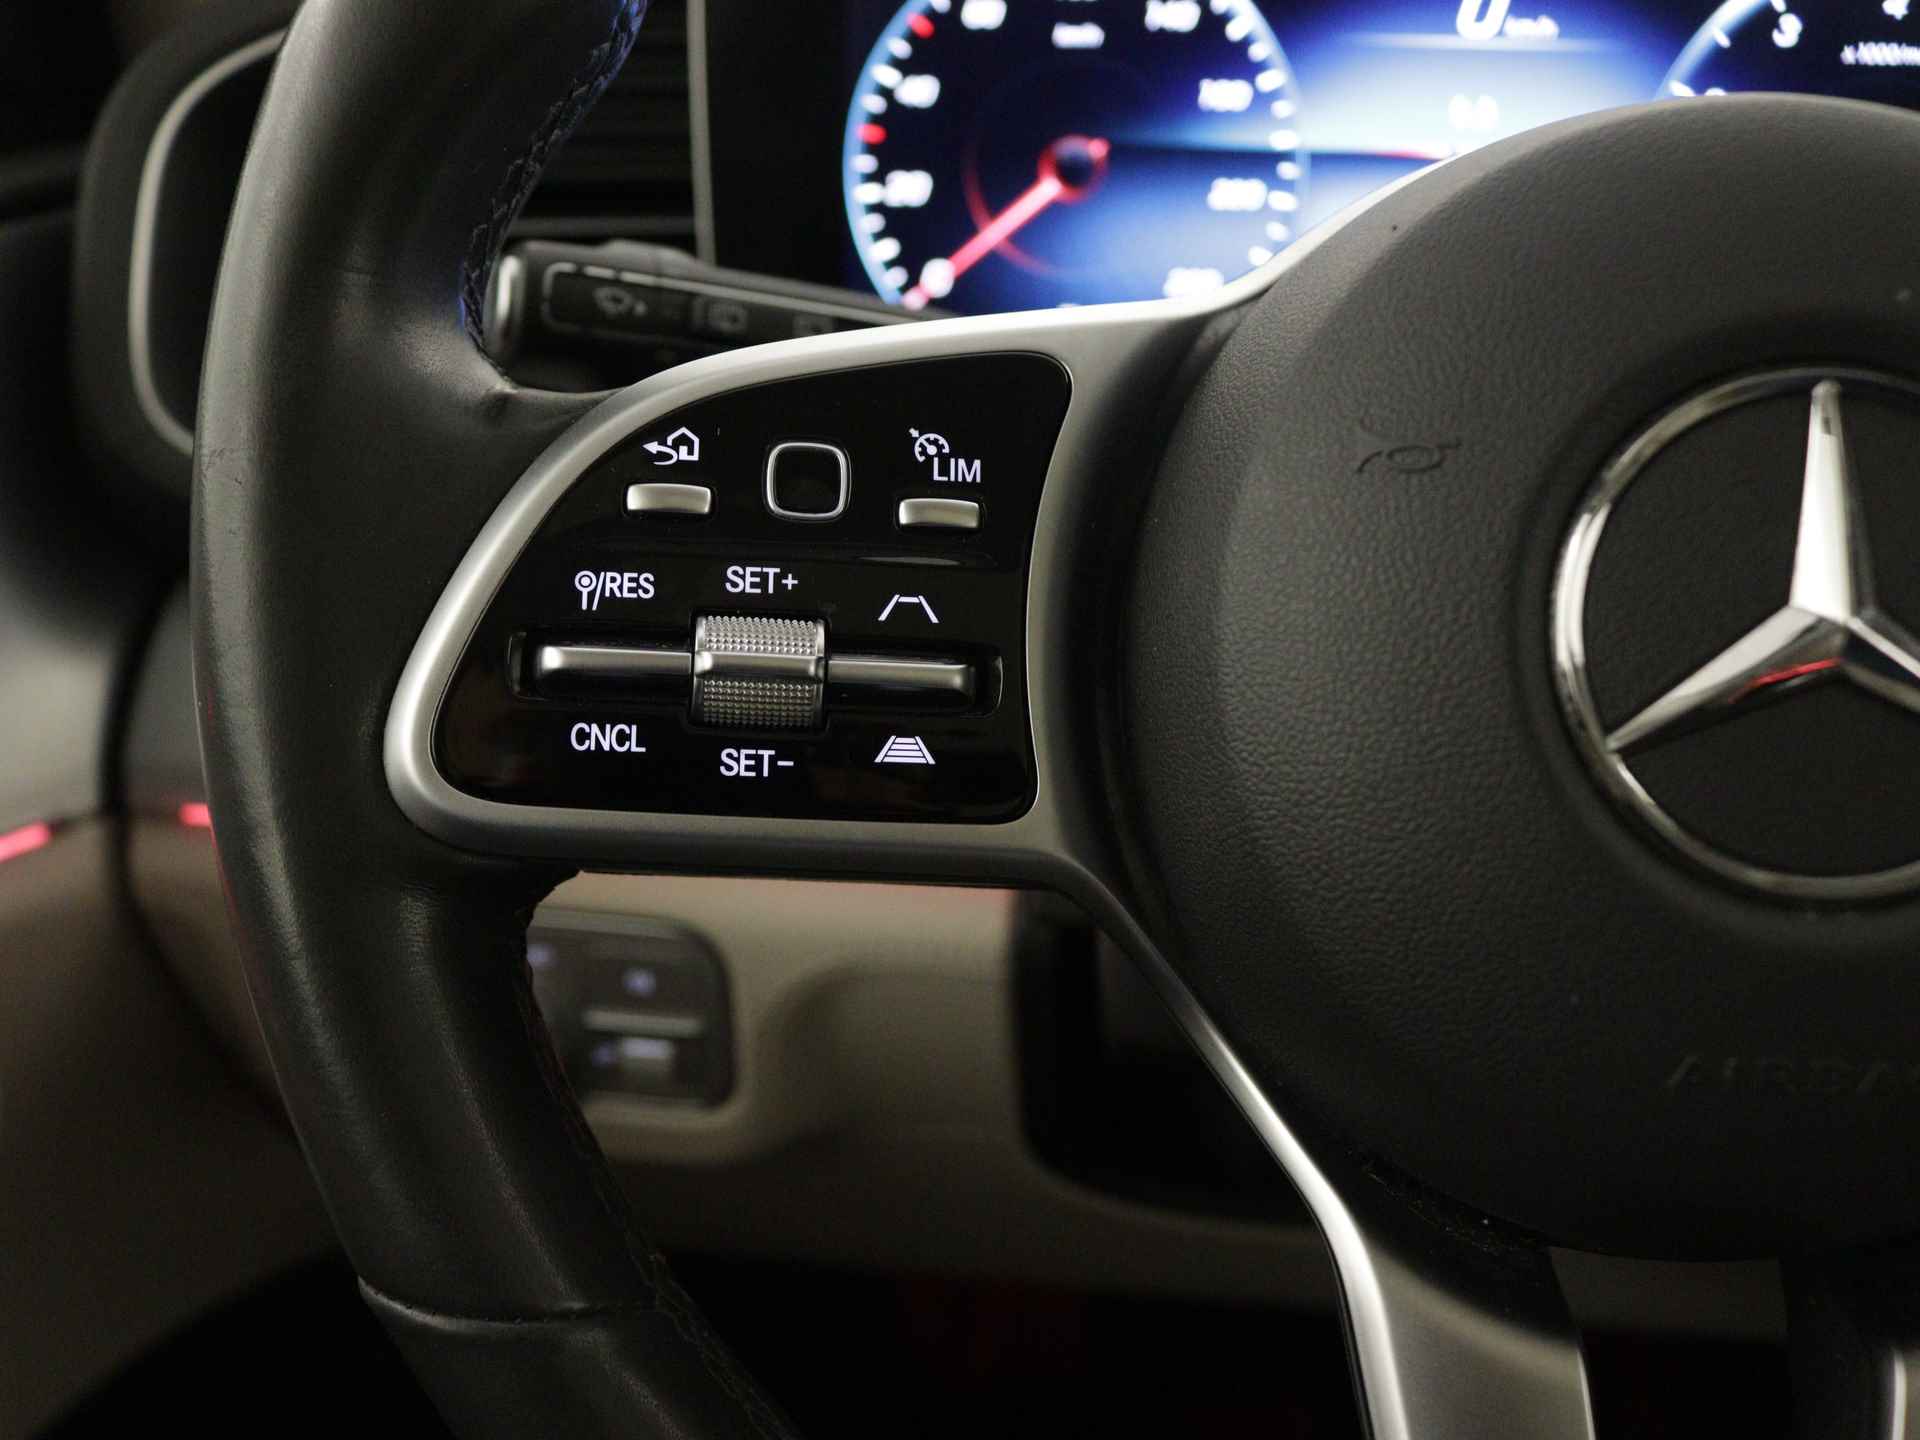 Mercedes-Benz GLE 450 4MATIC AMG Line Premium | Panoramadak | Luchtvering | Burmester | Navigatie | MBUX wide screen | Alarm klasse 3 | Parking support | inclusief 24 maanden MB Certified garantie voor europa - 19/39